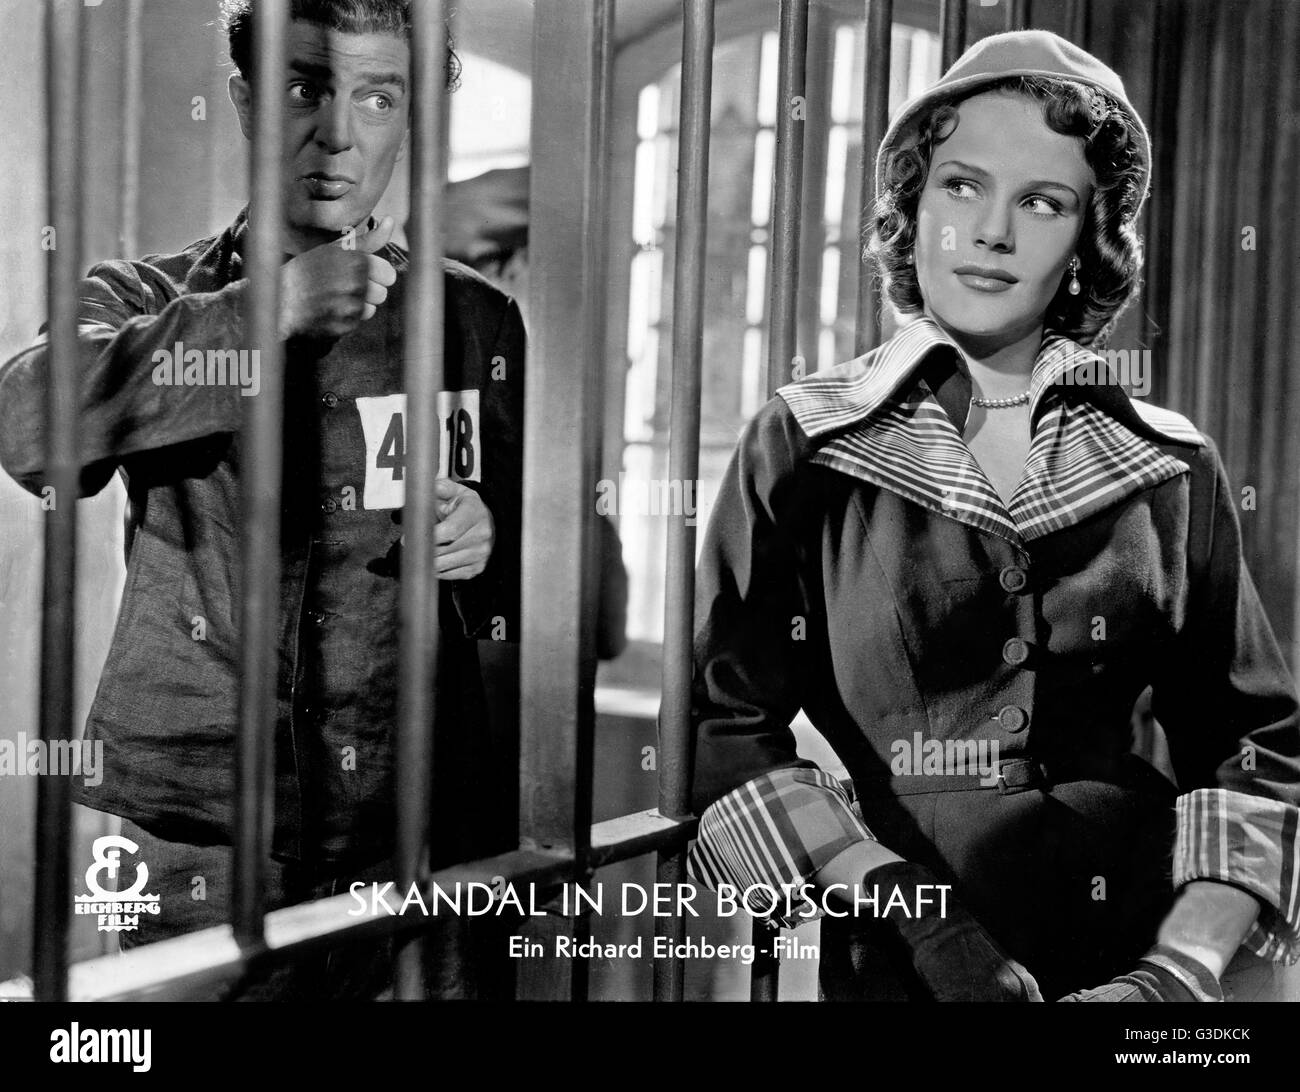 Skandal in der Botschaft, Deutschland 1950, Regie: Erik Ode, Darsteller: Viktor de Kowa, Mady Rahl (?) Stock Photo